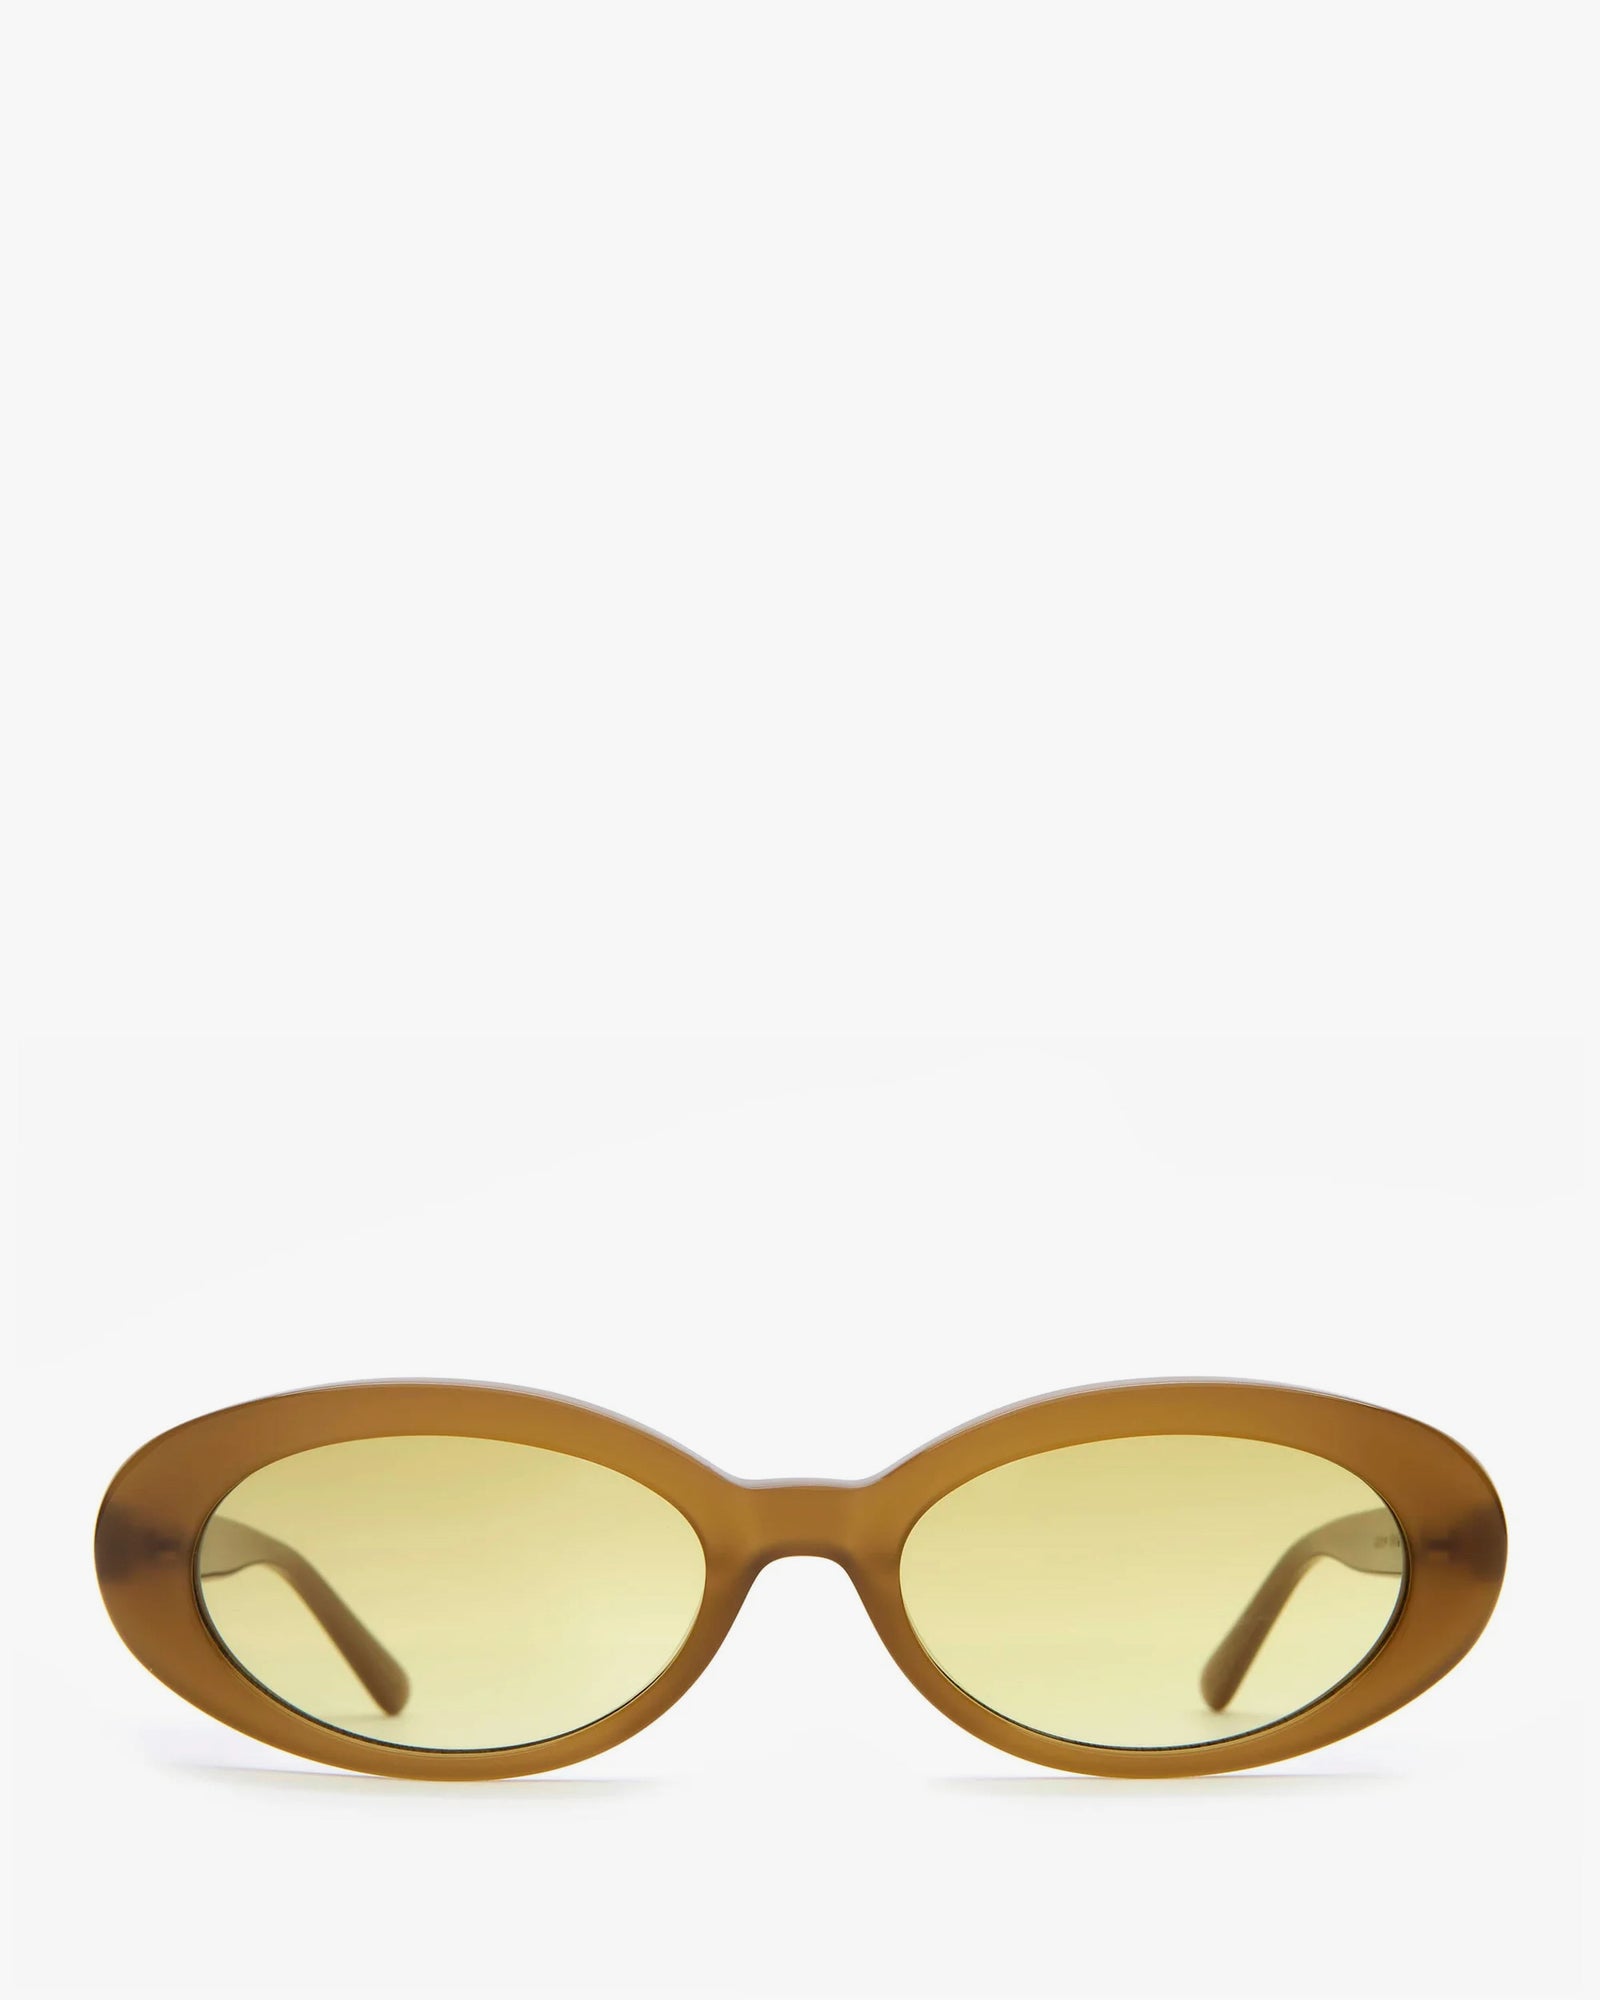 Mustard Seed Sweet Leaf Sunglasses